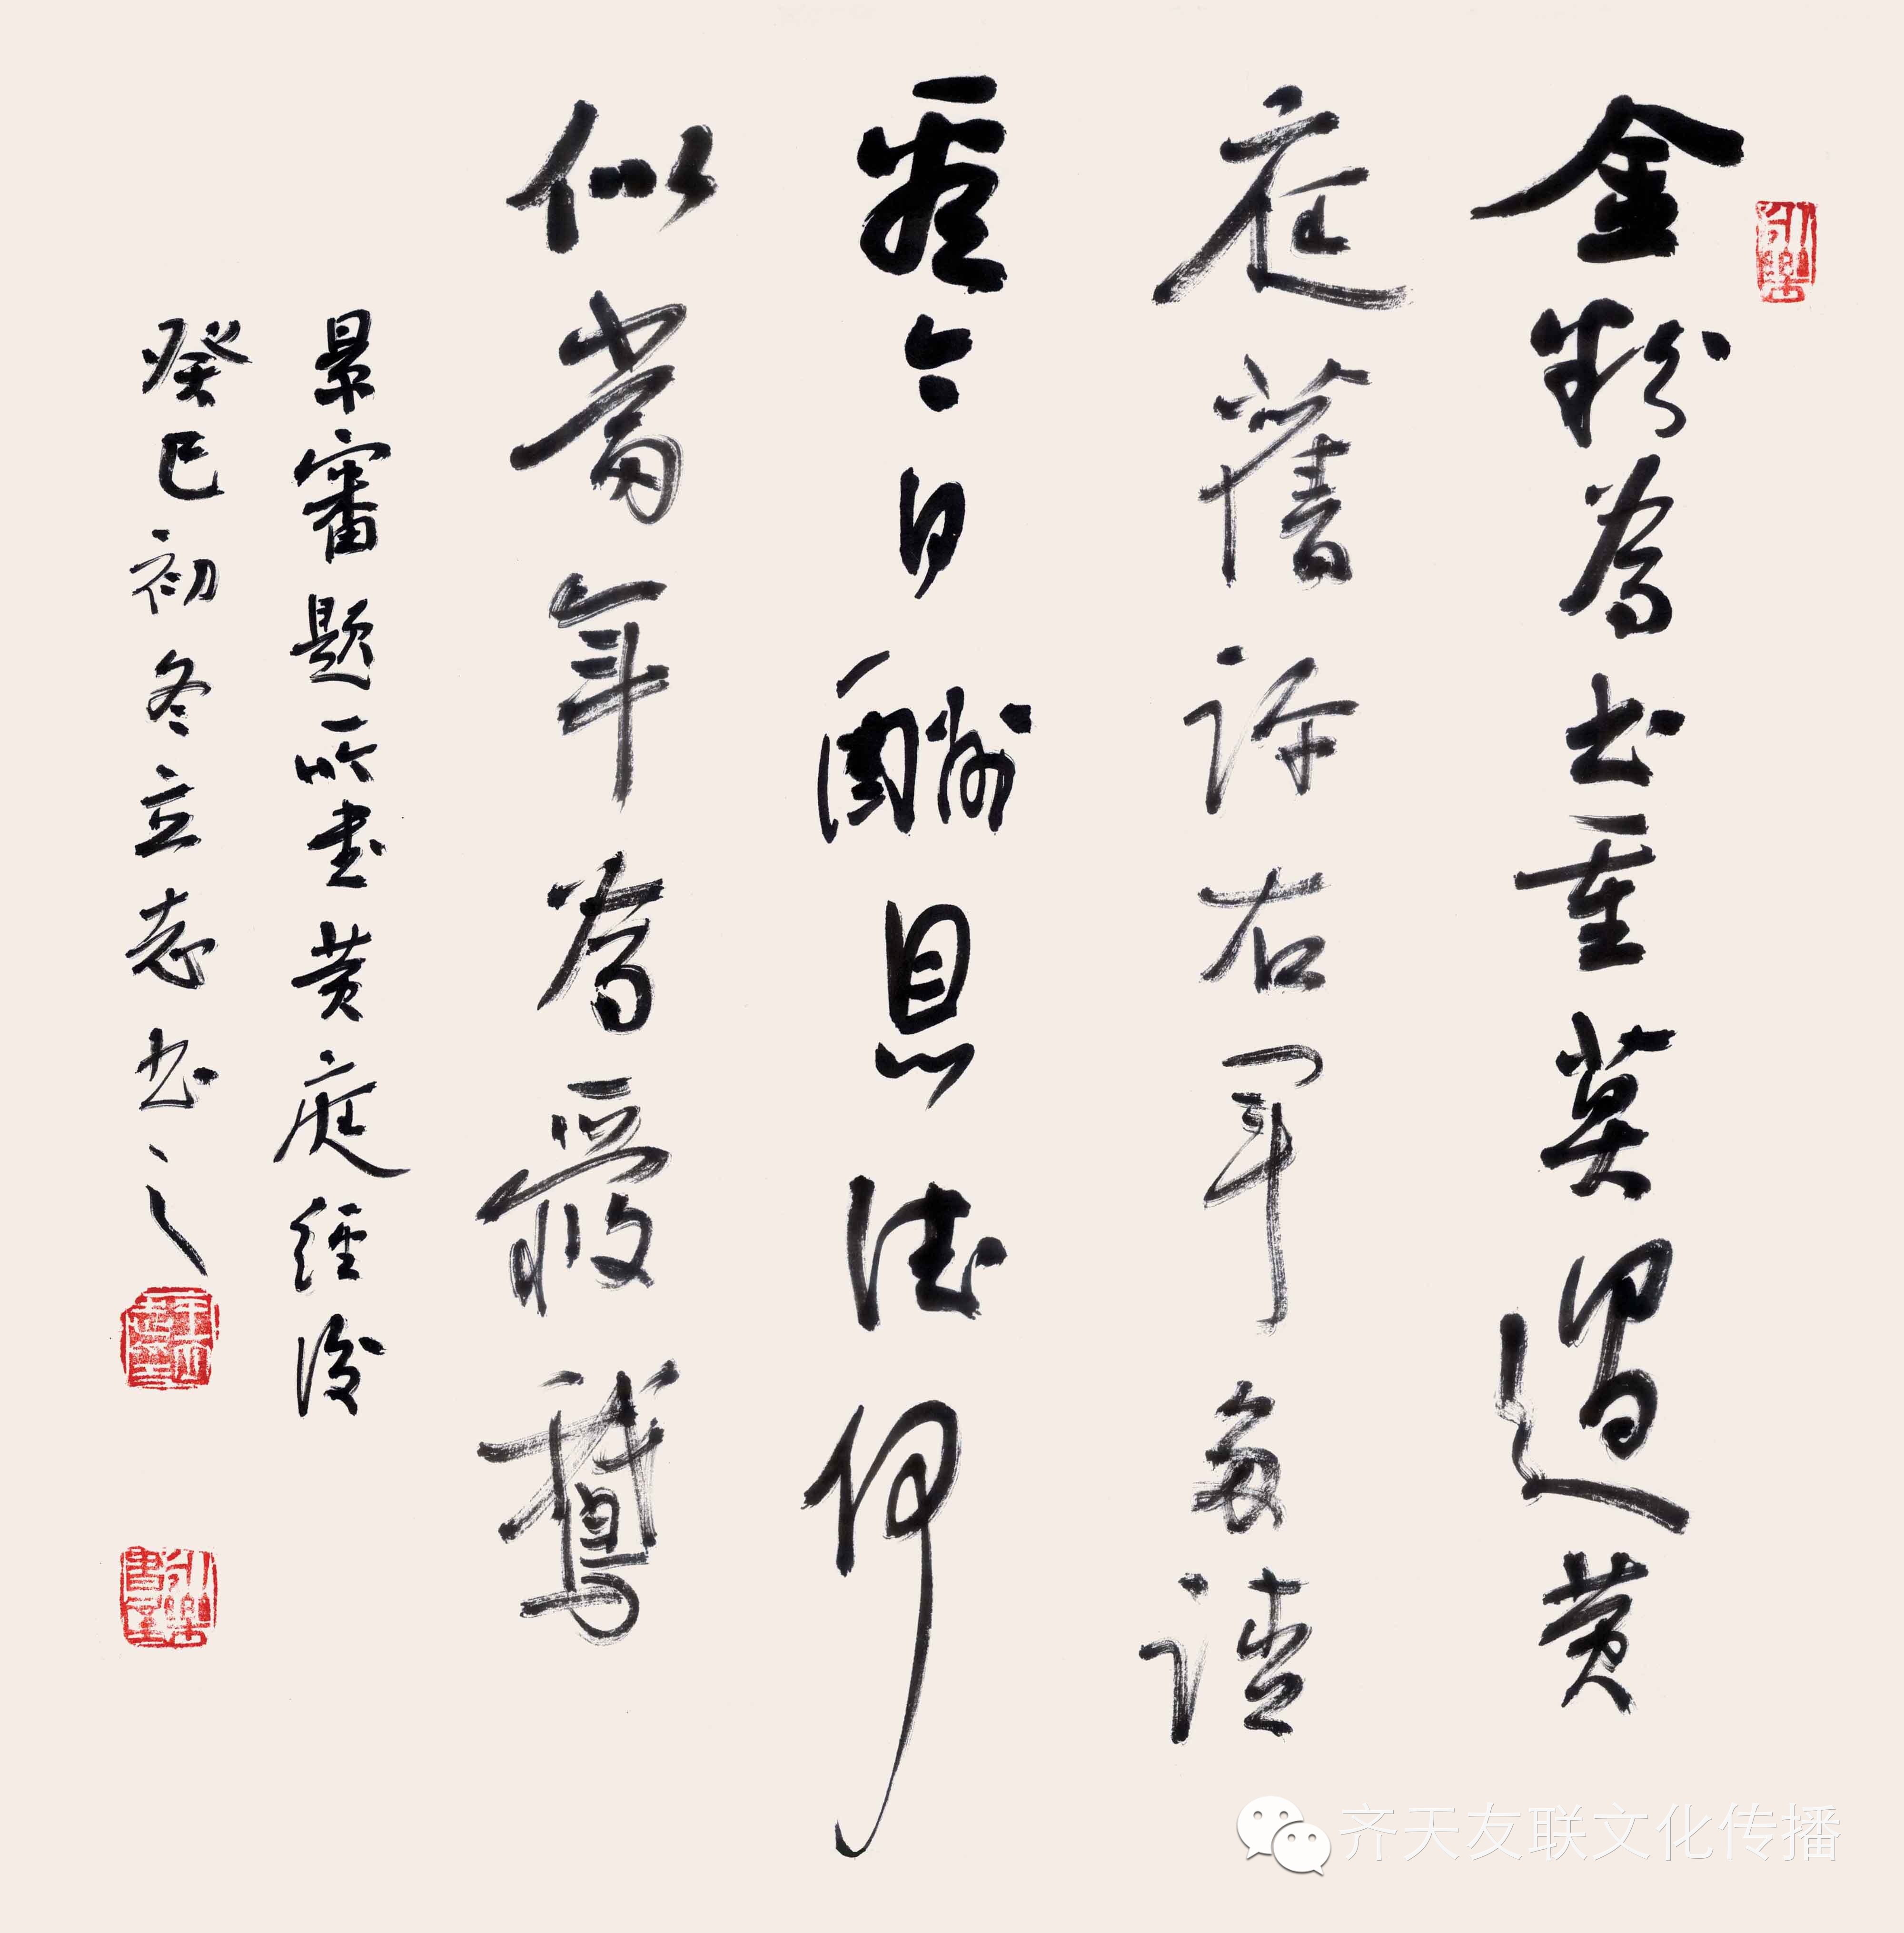 中国当代书画名家档案(四二)--书法家 王立志